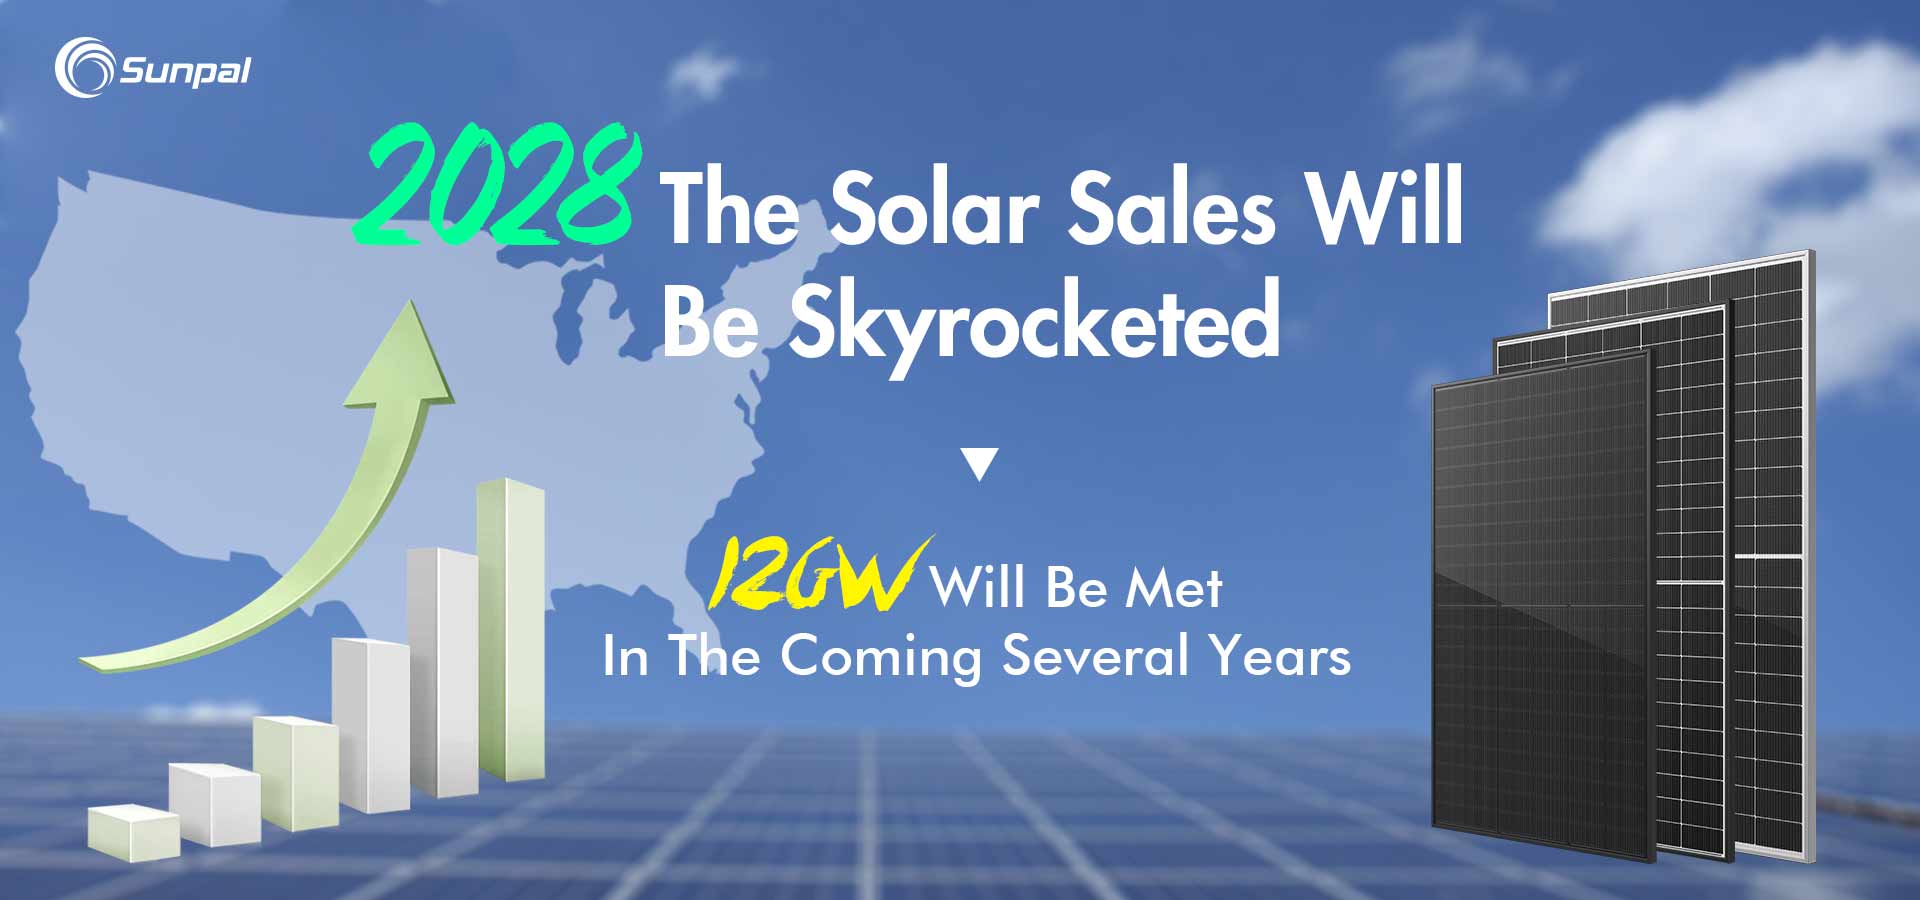 As vendas comerciais de energia solar explodirão à medida que o mercado dos EUA atingir 14 GW até 2028